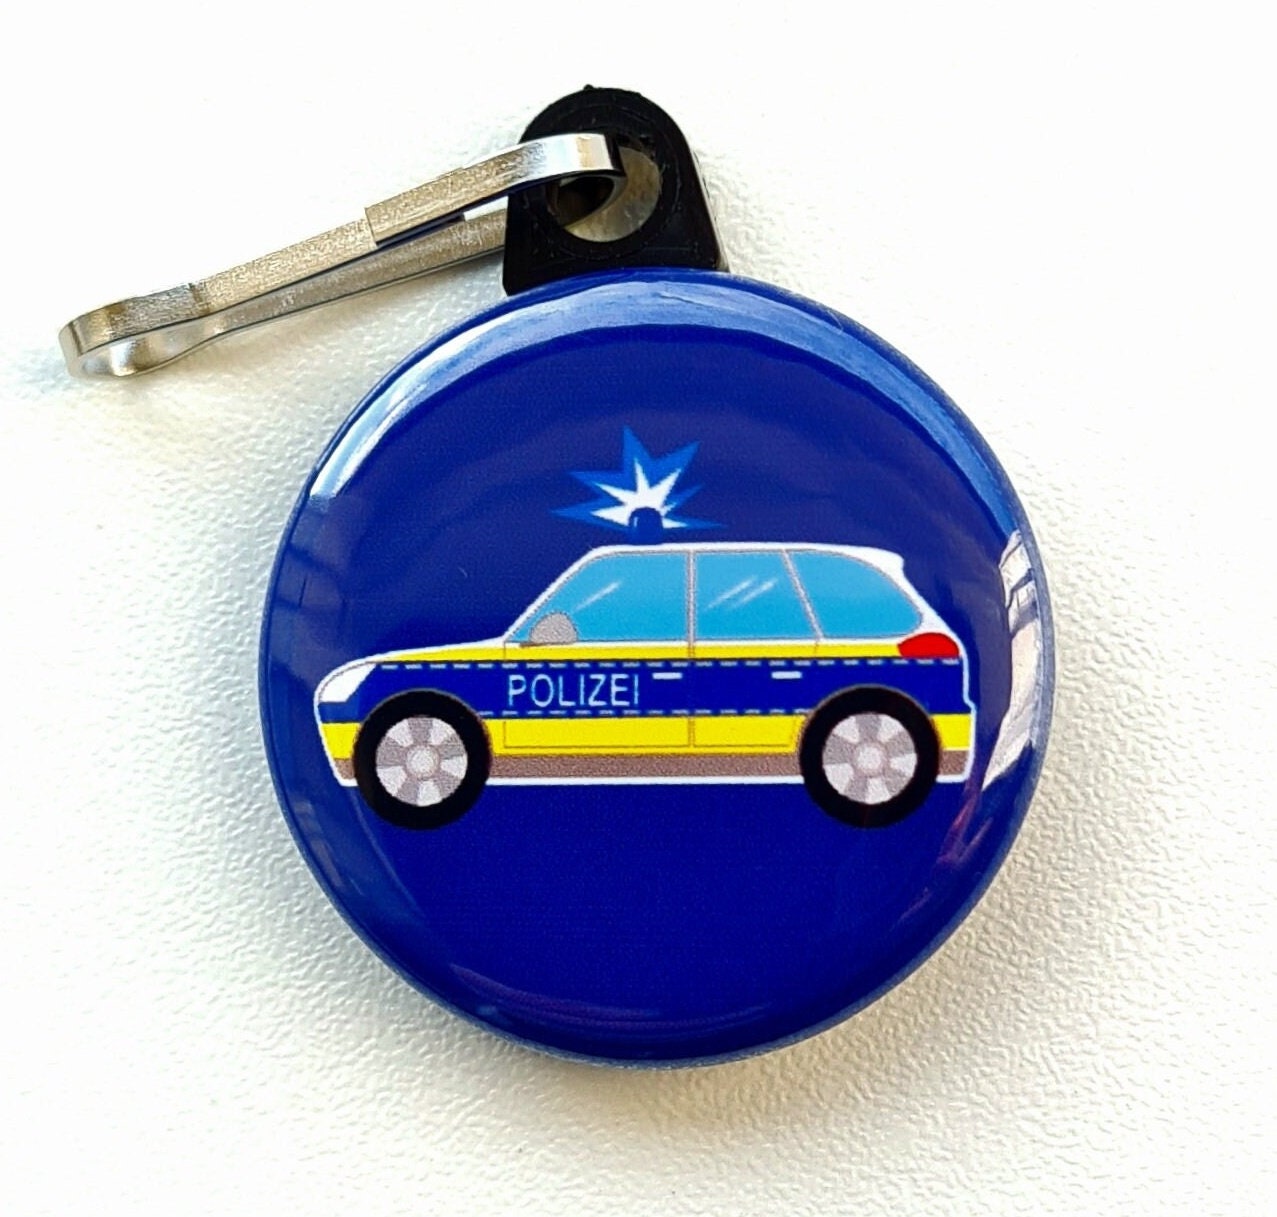 Polizei Karabiner Schlüsselanhänger in blau - Polizei Werbeartikel Branchen